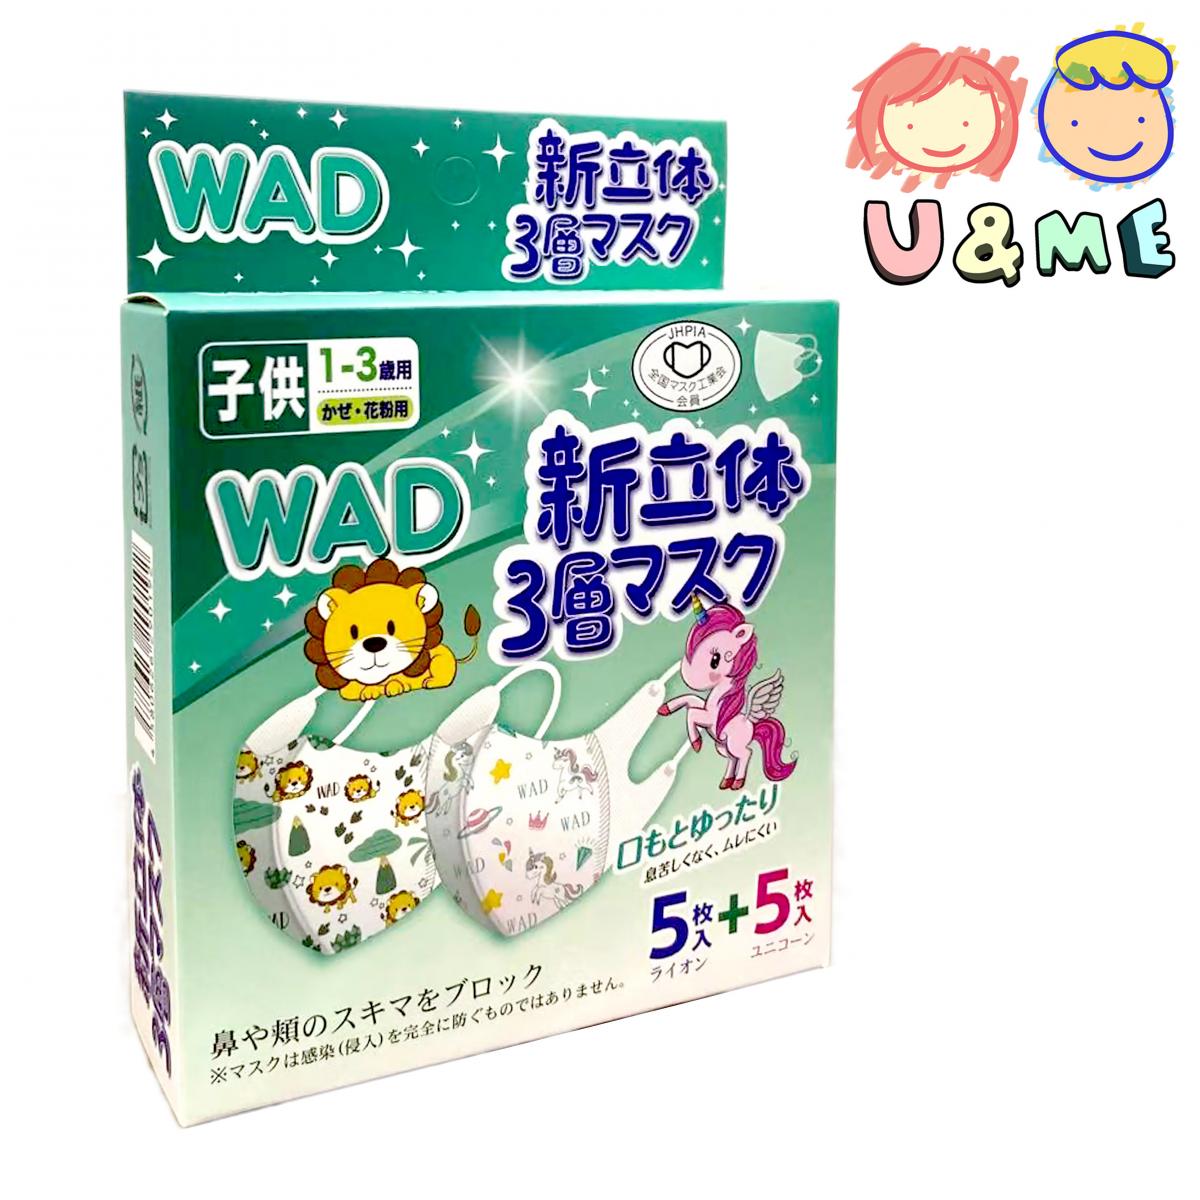 日本3層3D立體1-3歲專用口罩10個入/盒 (5個粉紅獨角獸+5個藍色獅子)